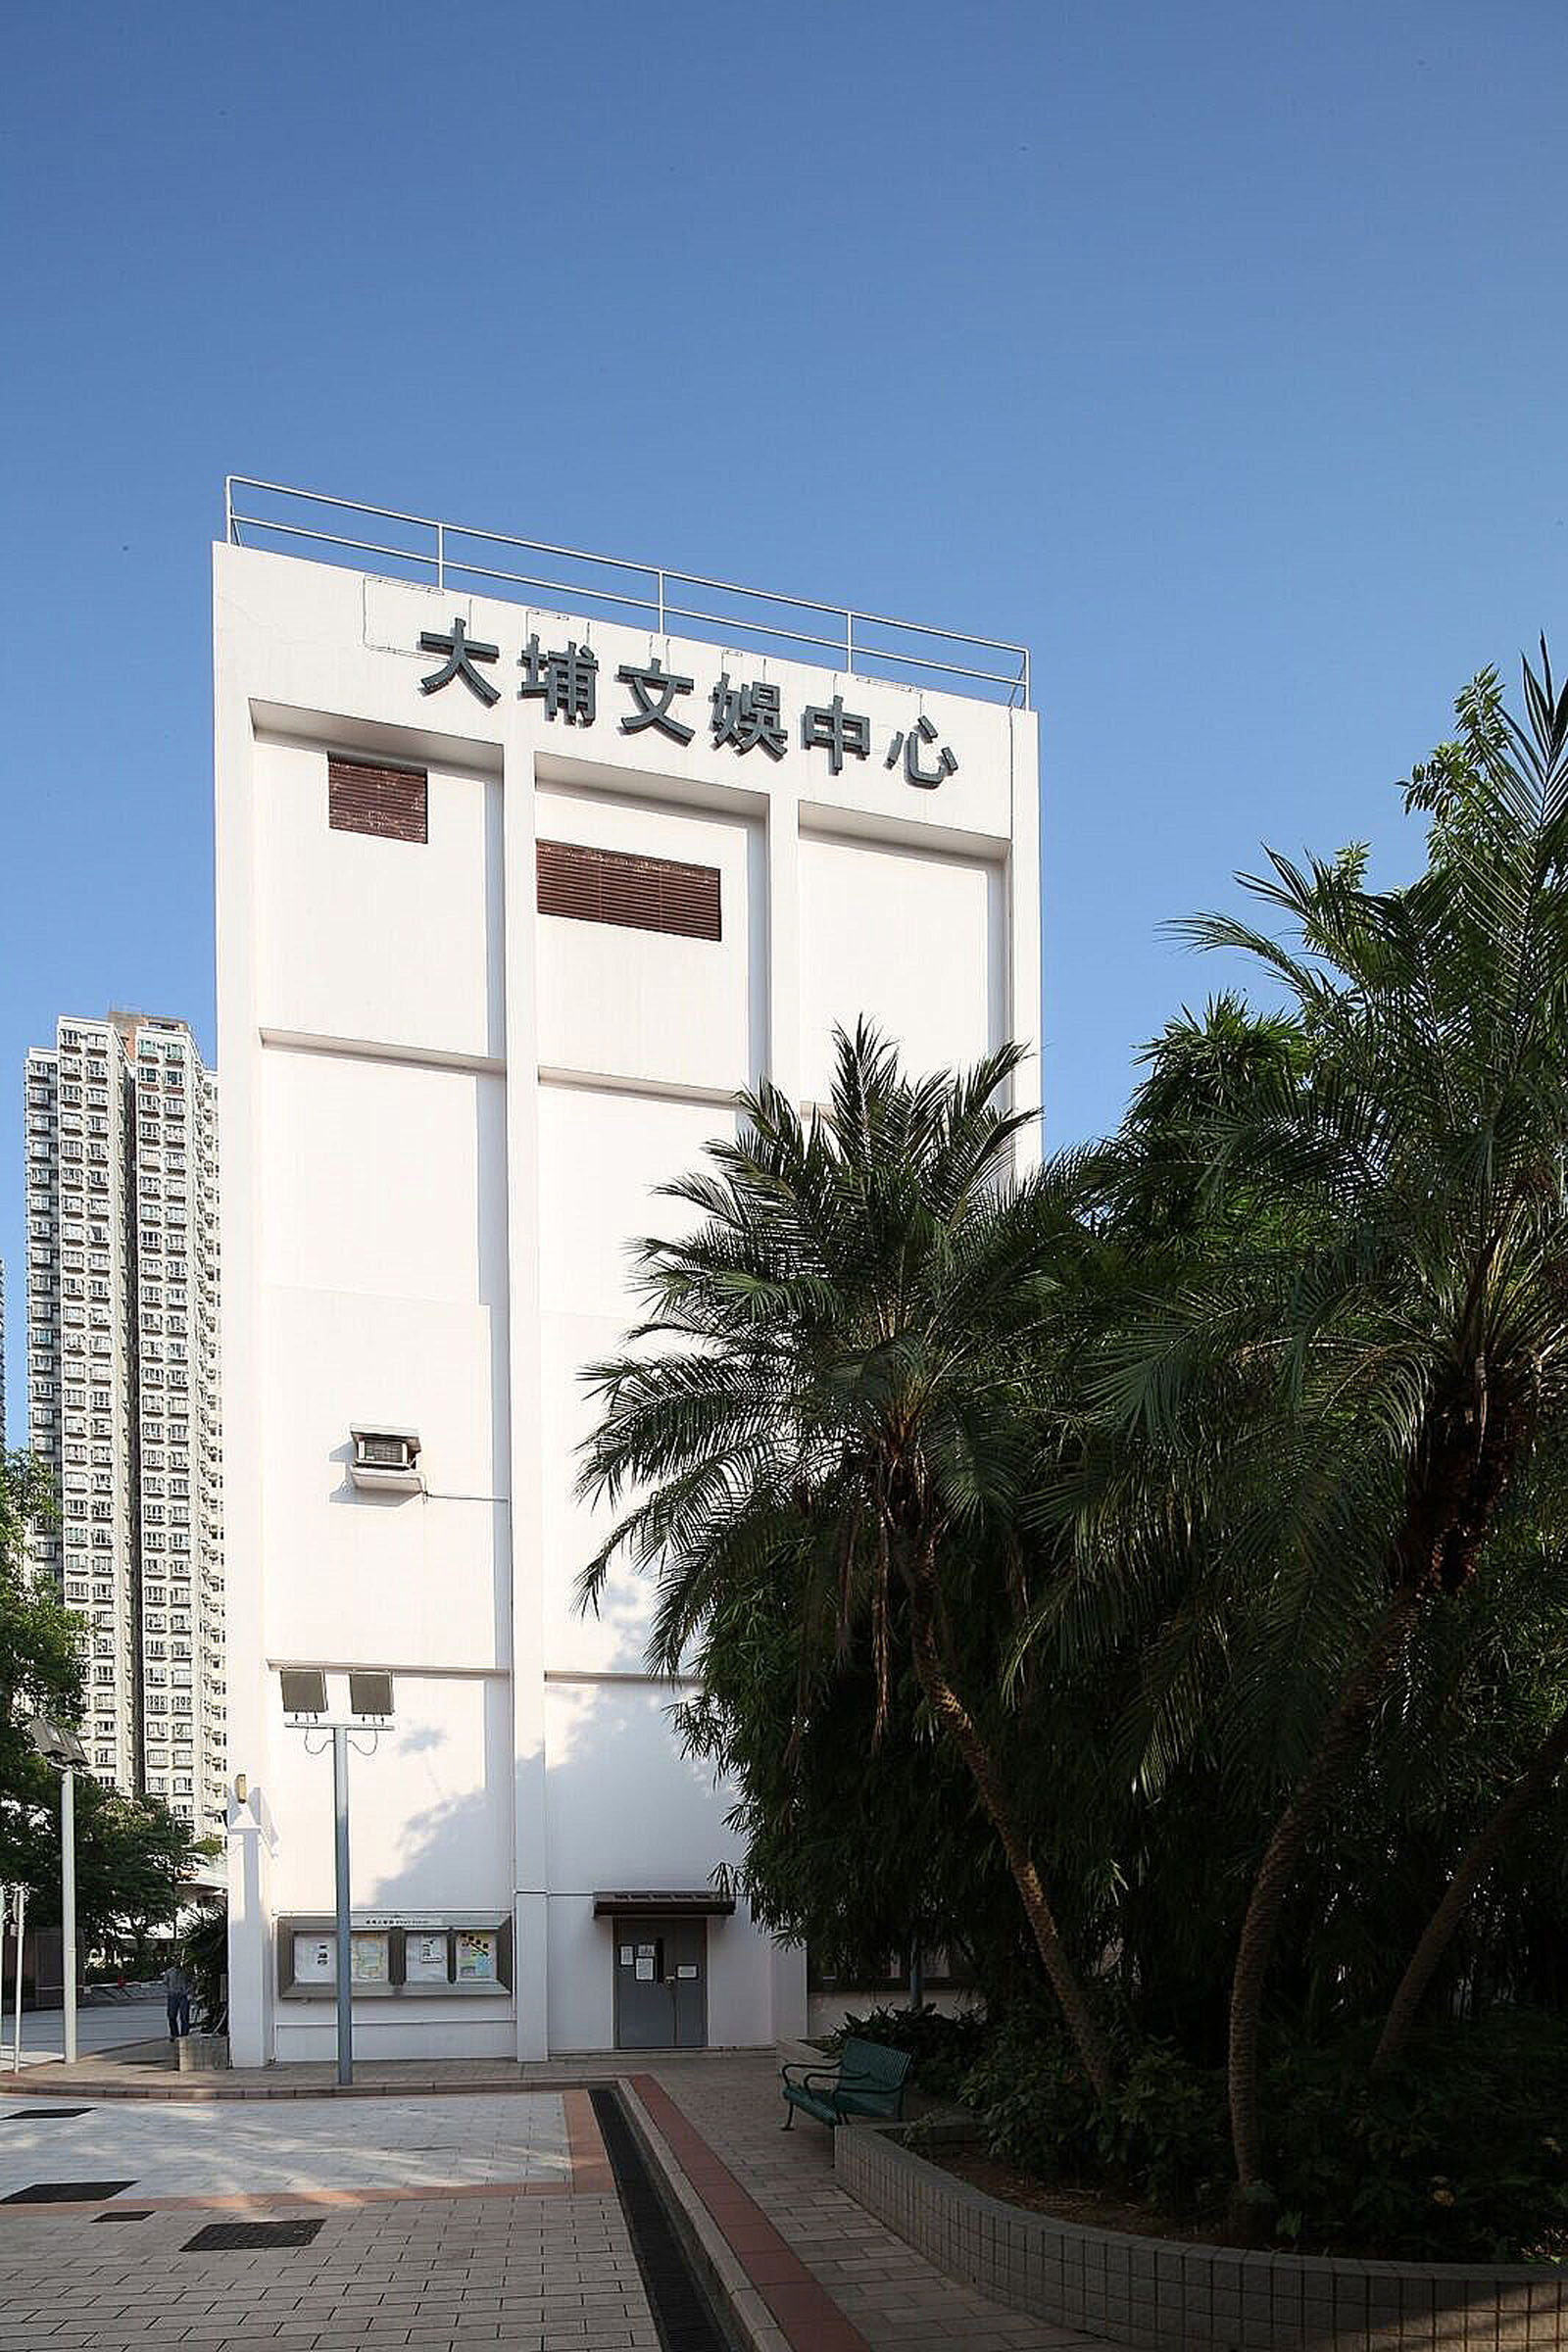 Photo 2: Tai Po Civic Centre